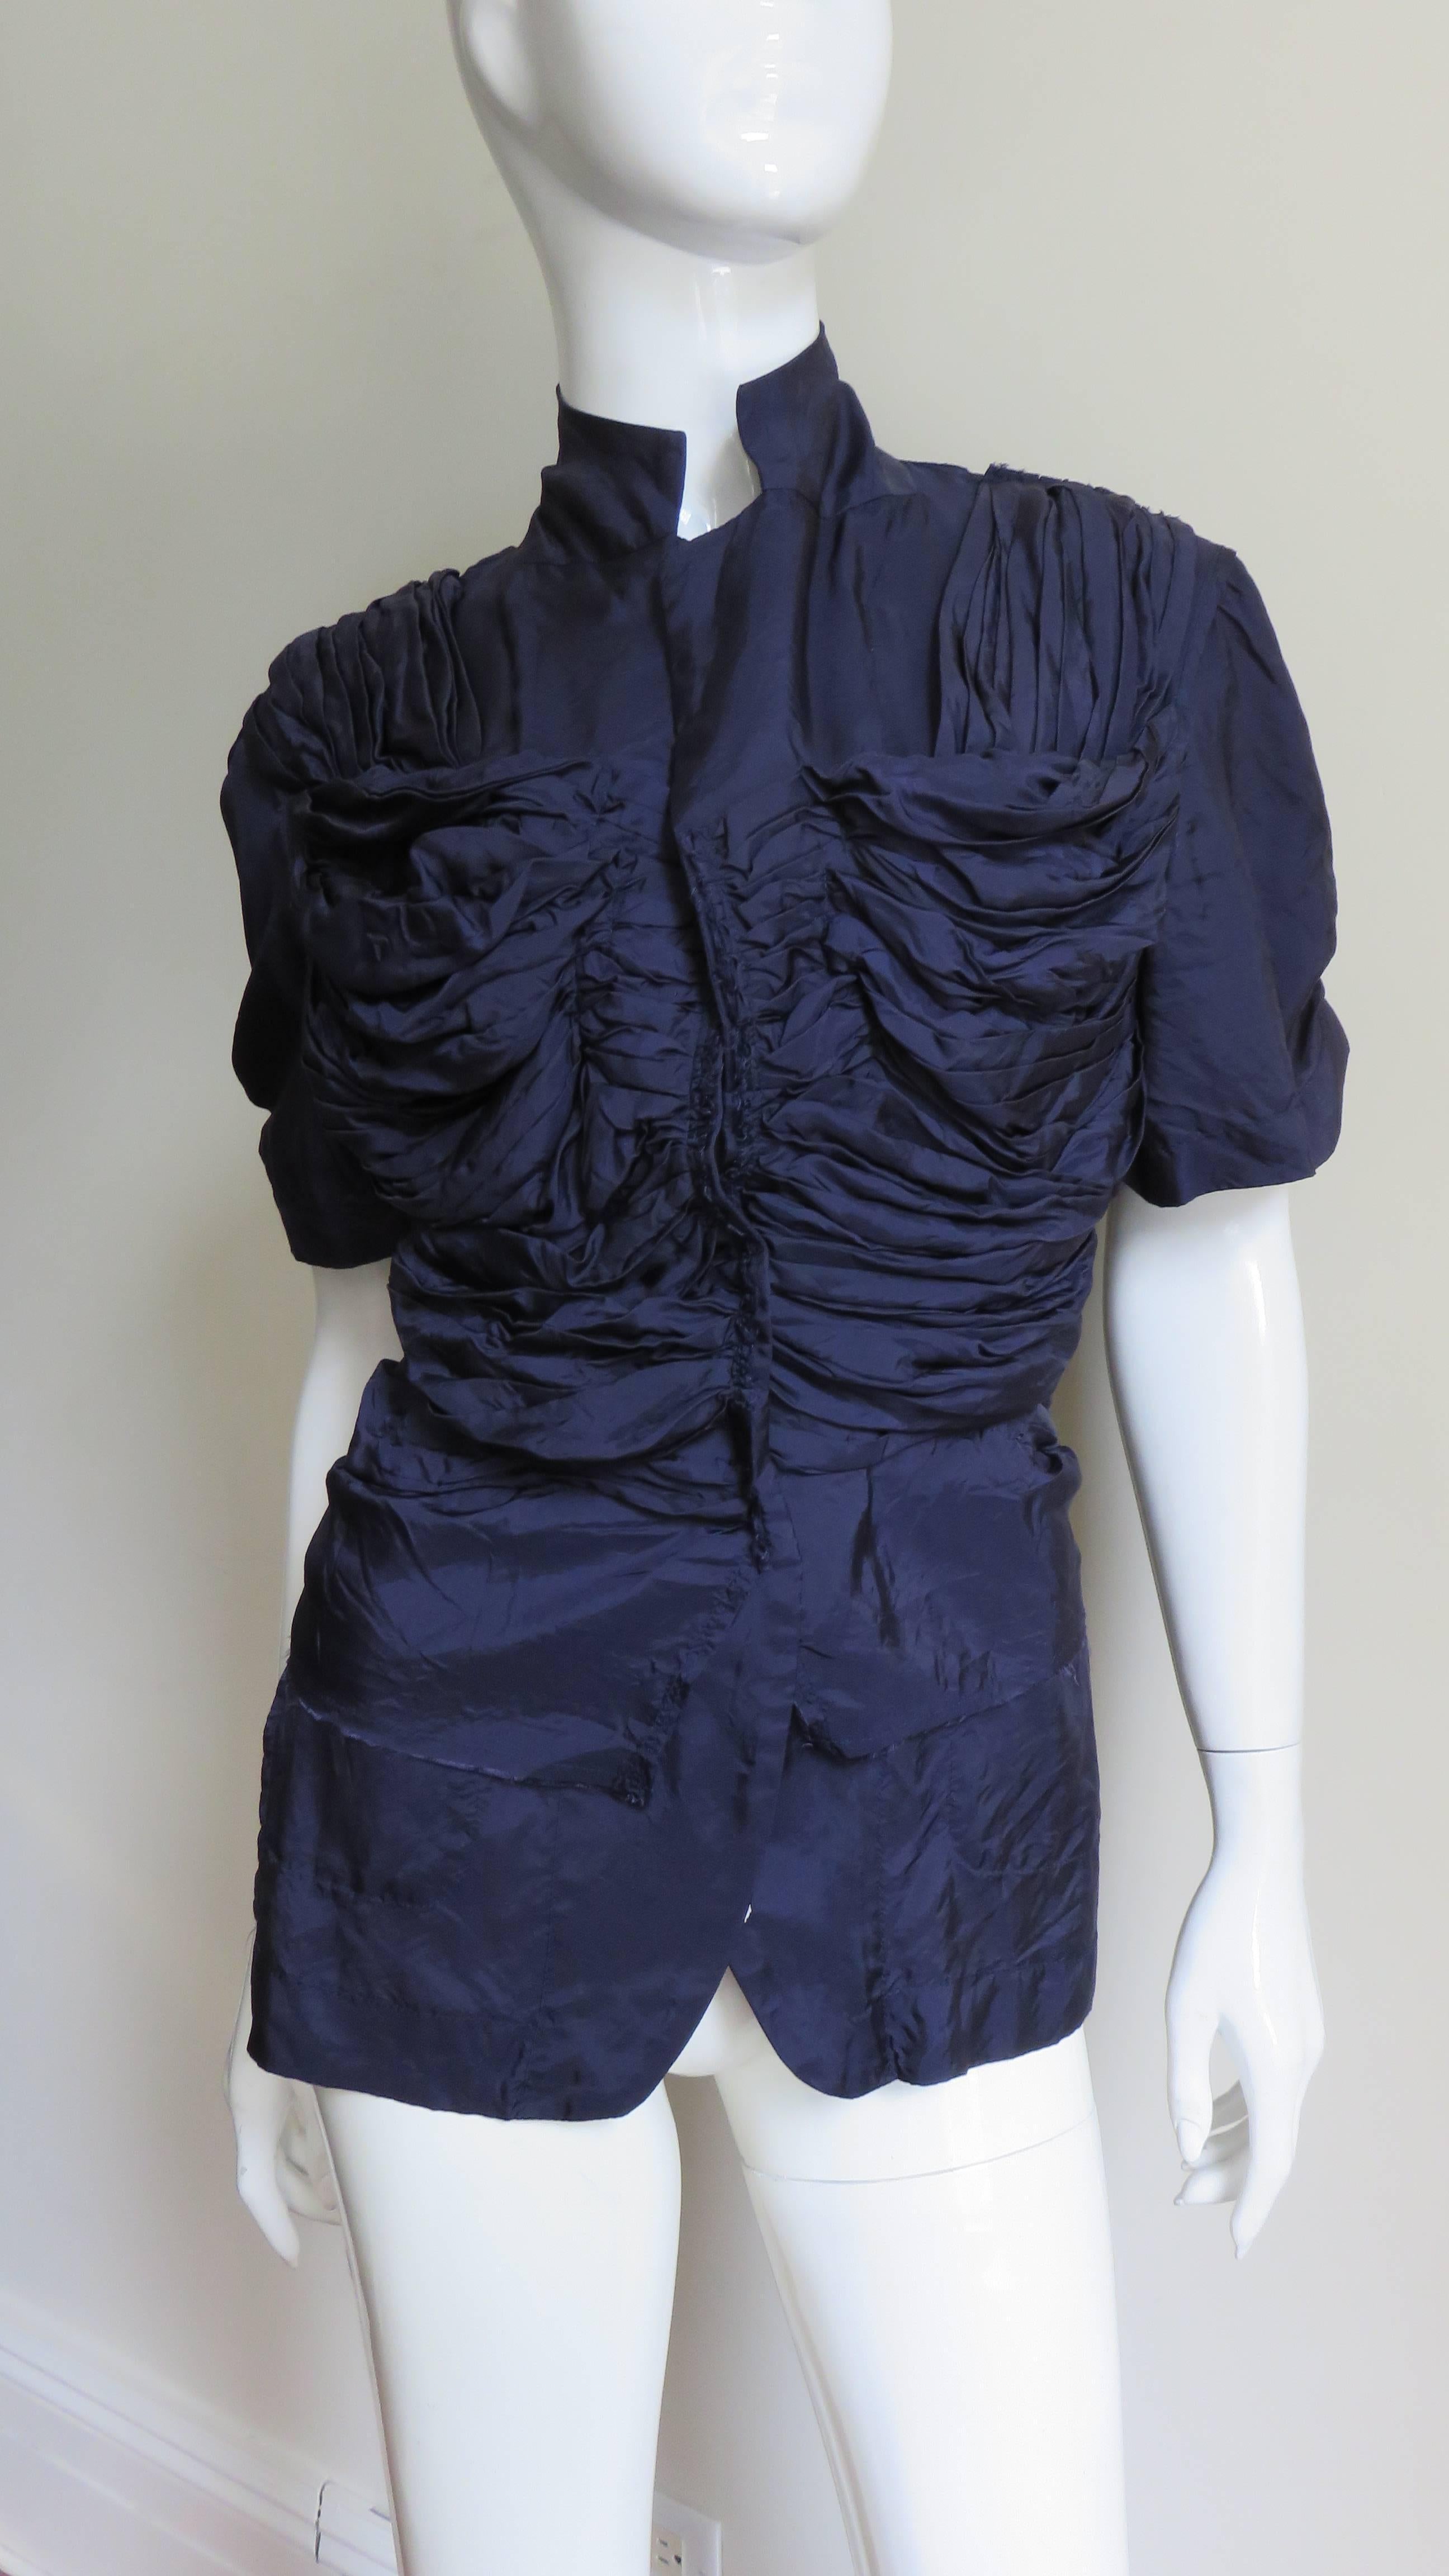 Une belle veste chemise en soie ruchée de couleur violet aubergine de la collection Comme des Garcons, CDG AD 2000.  Elle a des manches courtes, un col à revers convertible qui peut être fermé par des boutons et de nombreux fronces sur le devant qui